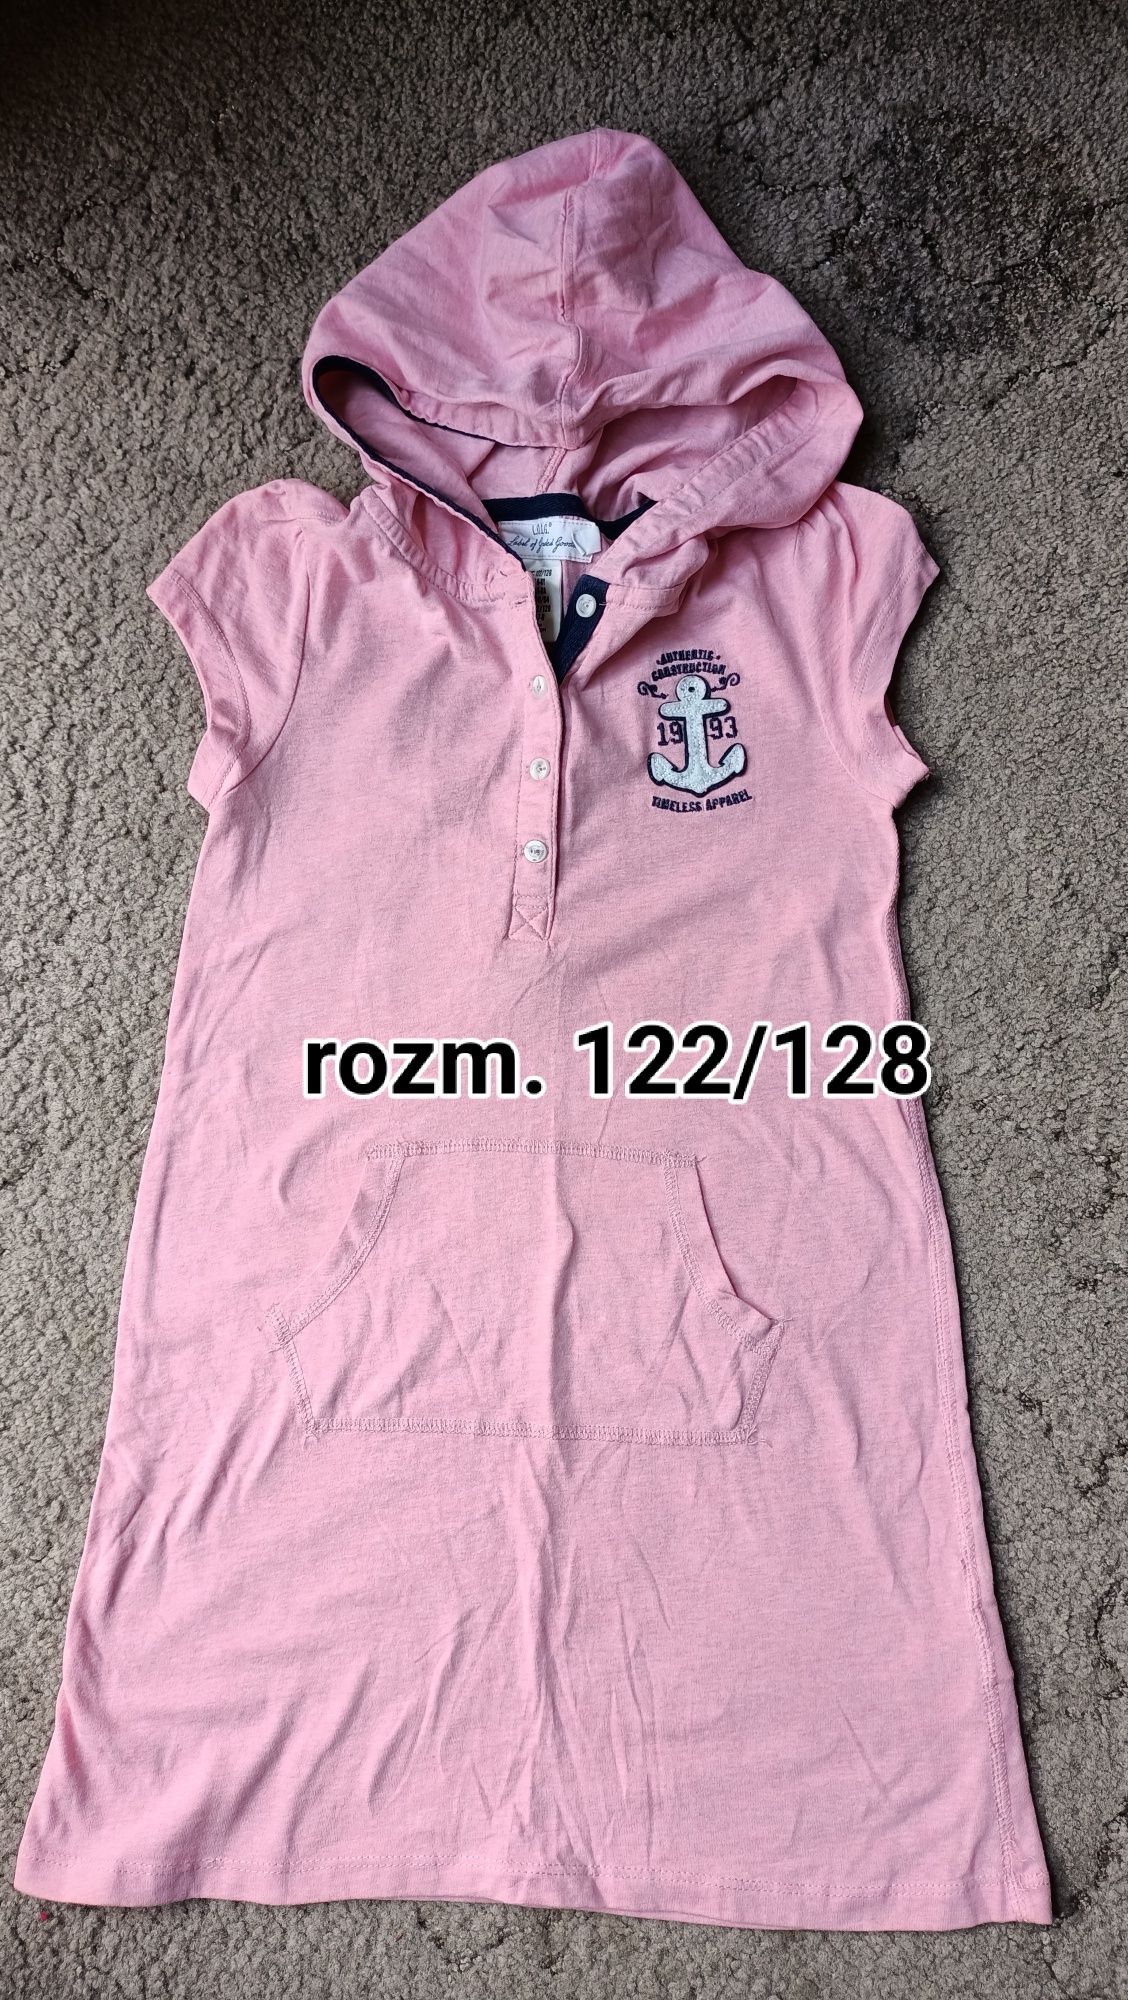 Różowa letnia sukienka z kapturem H&M rozm 122/128 kotwiac